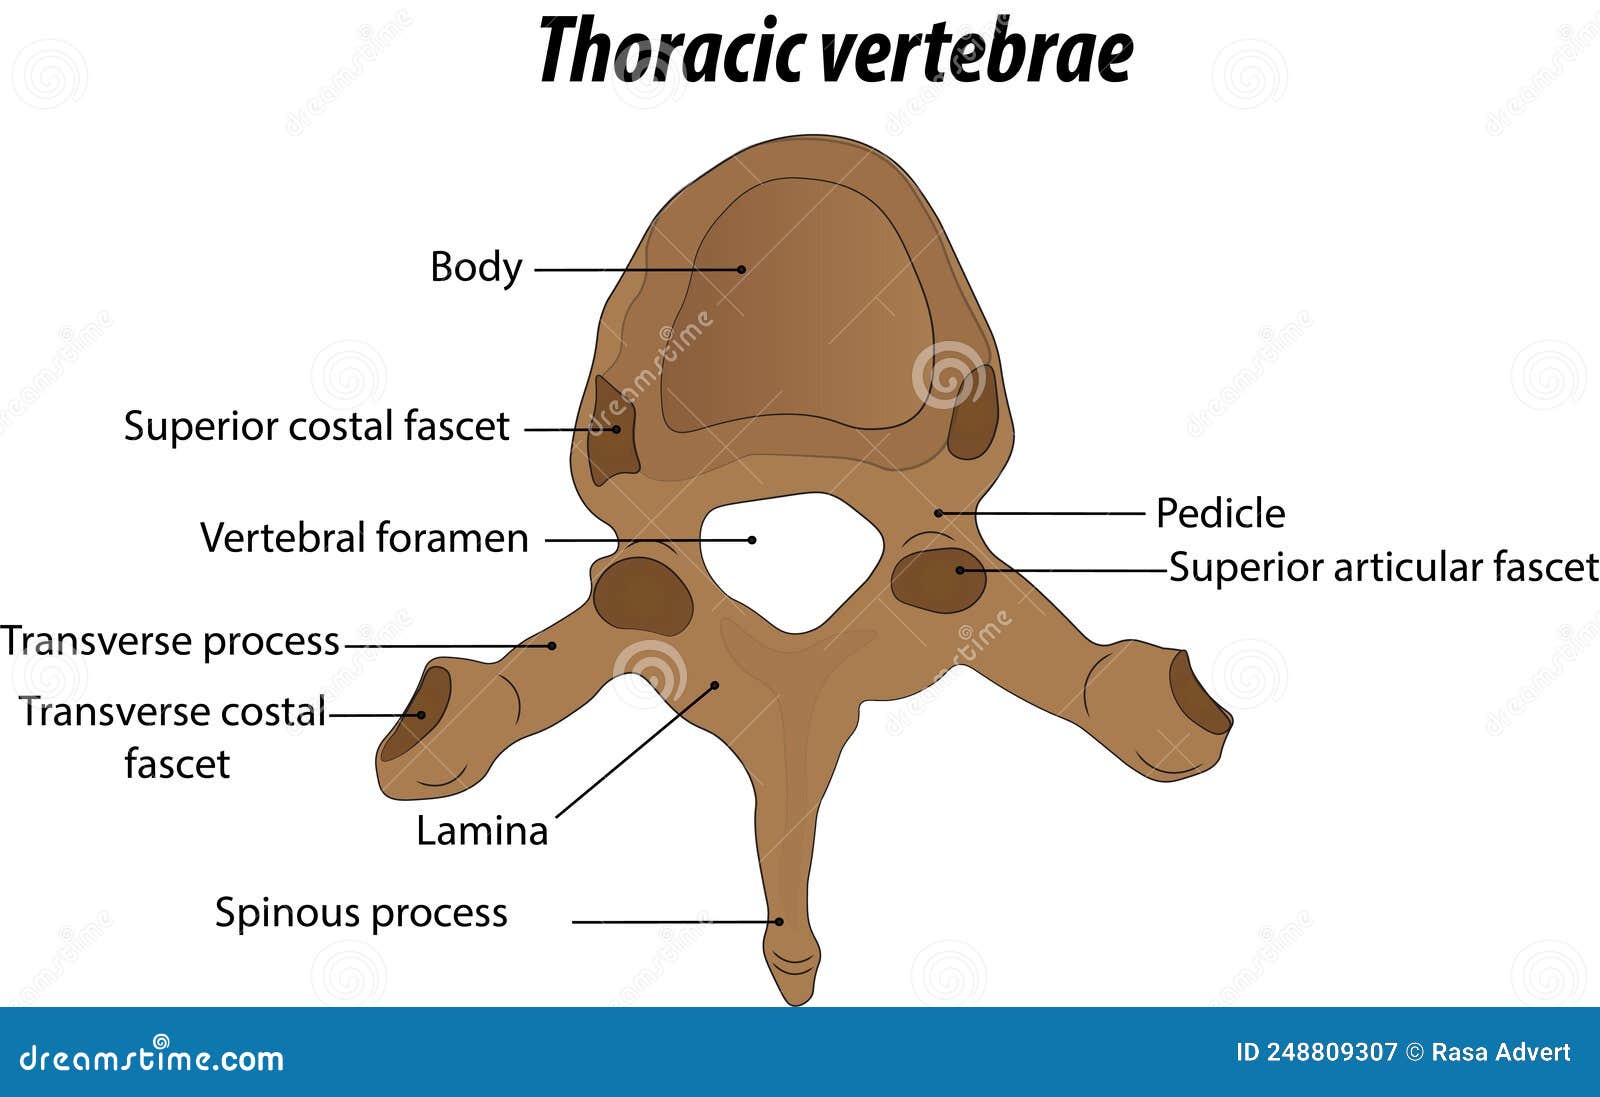 Thoracic Vertebrae Diagram